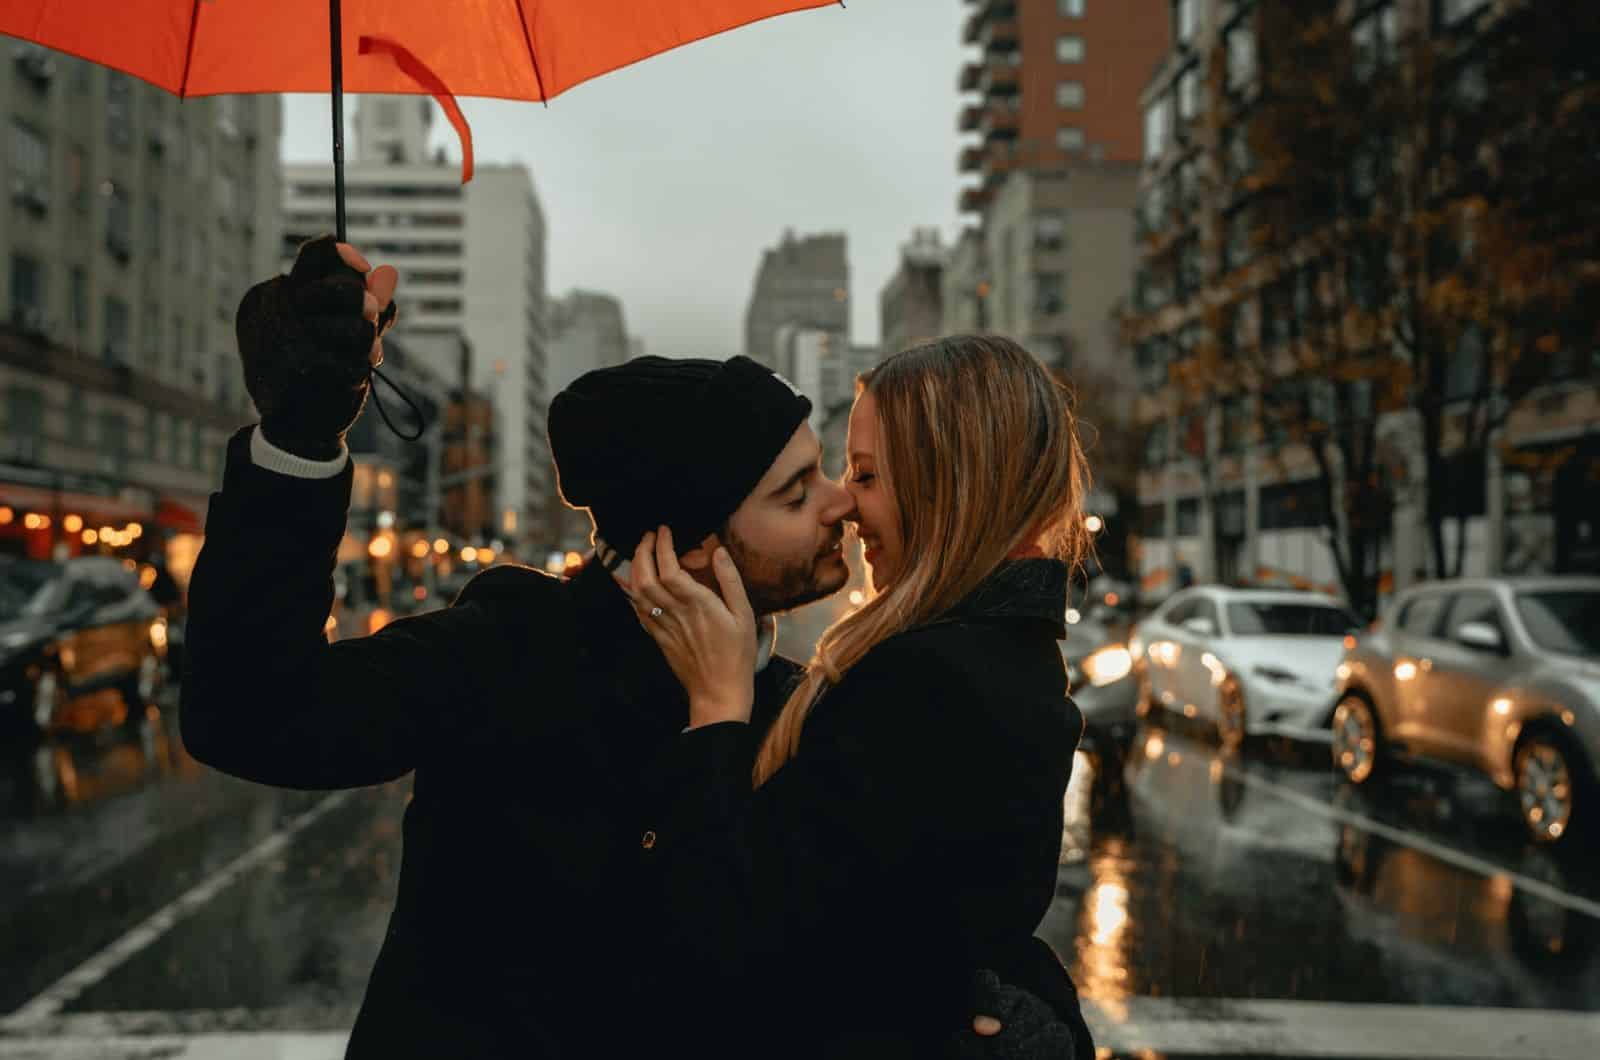 coppia che si bacia mentre l'uomo tiene l'ombrello